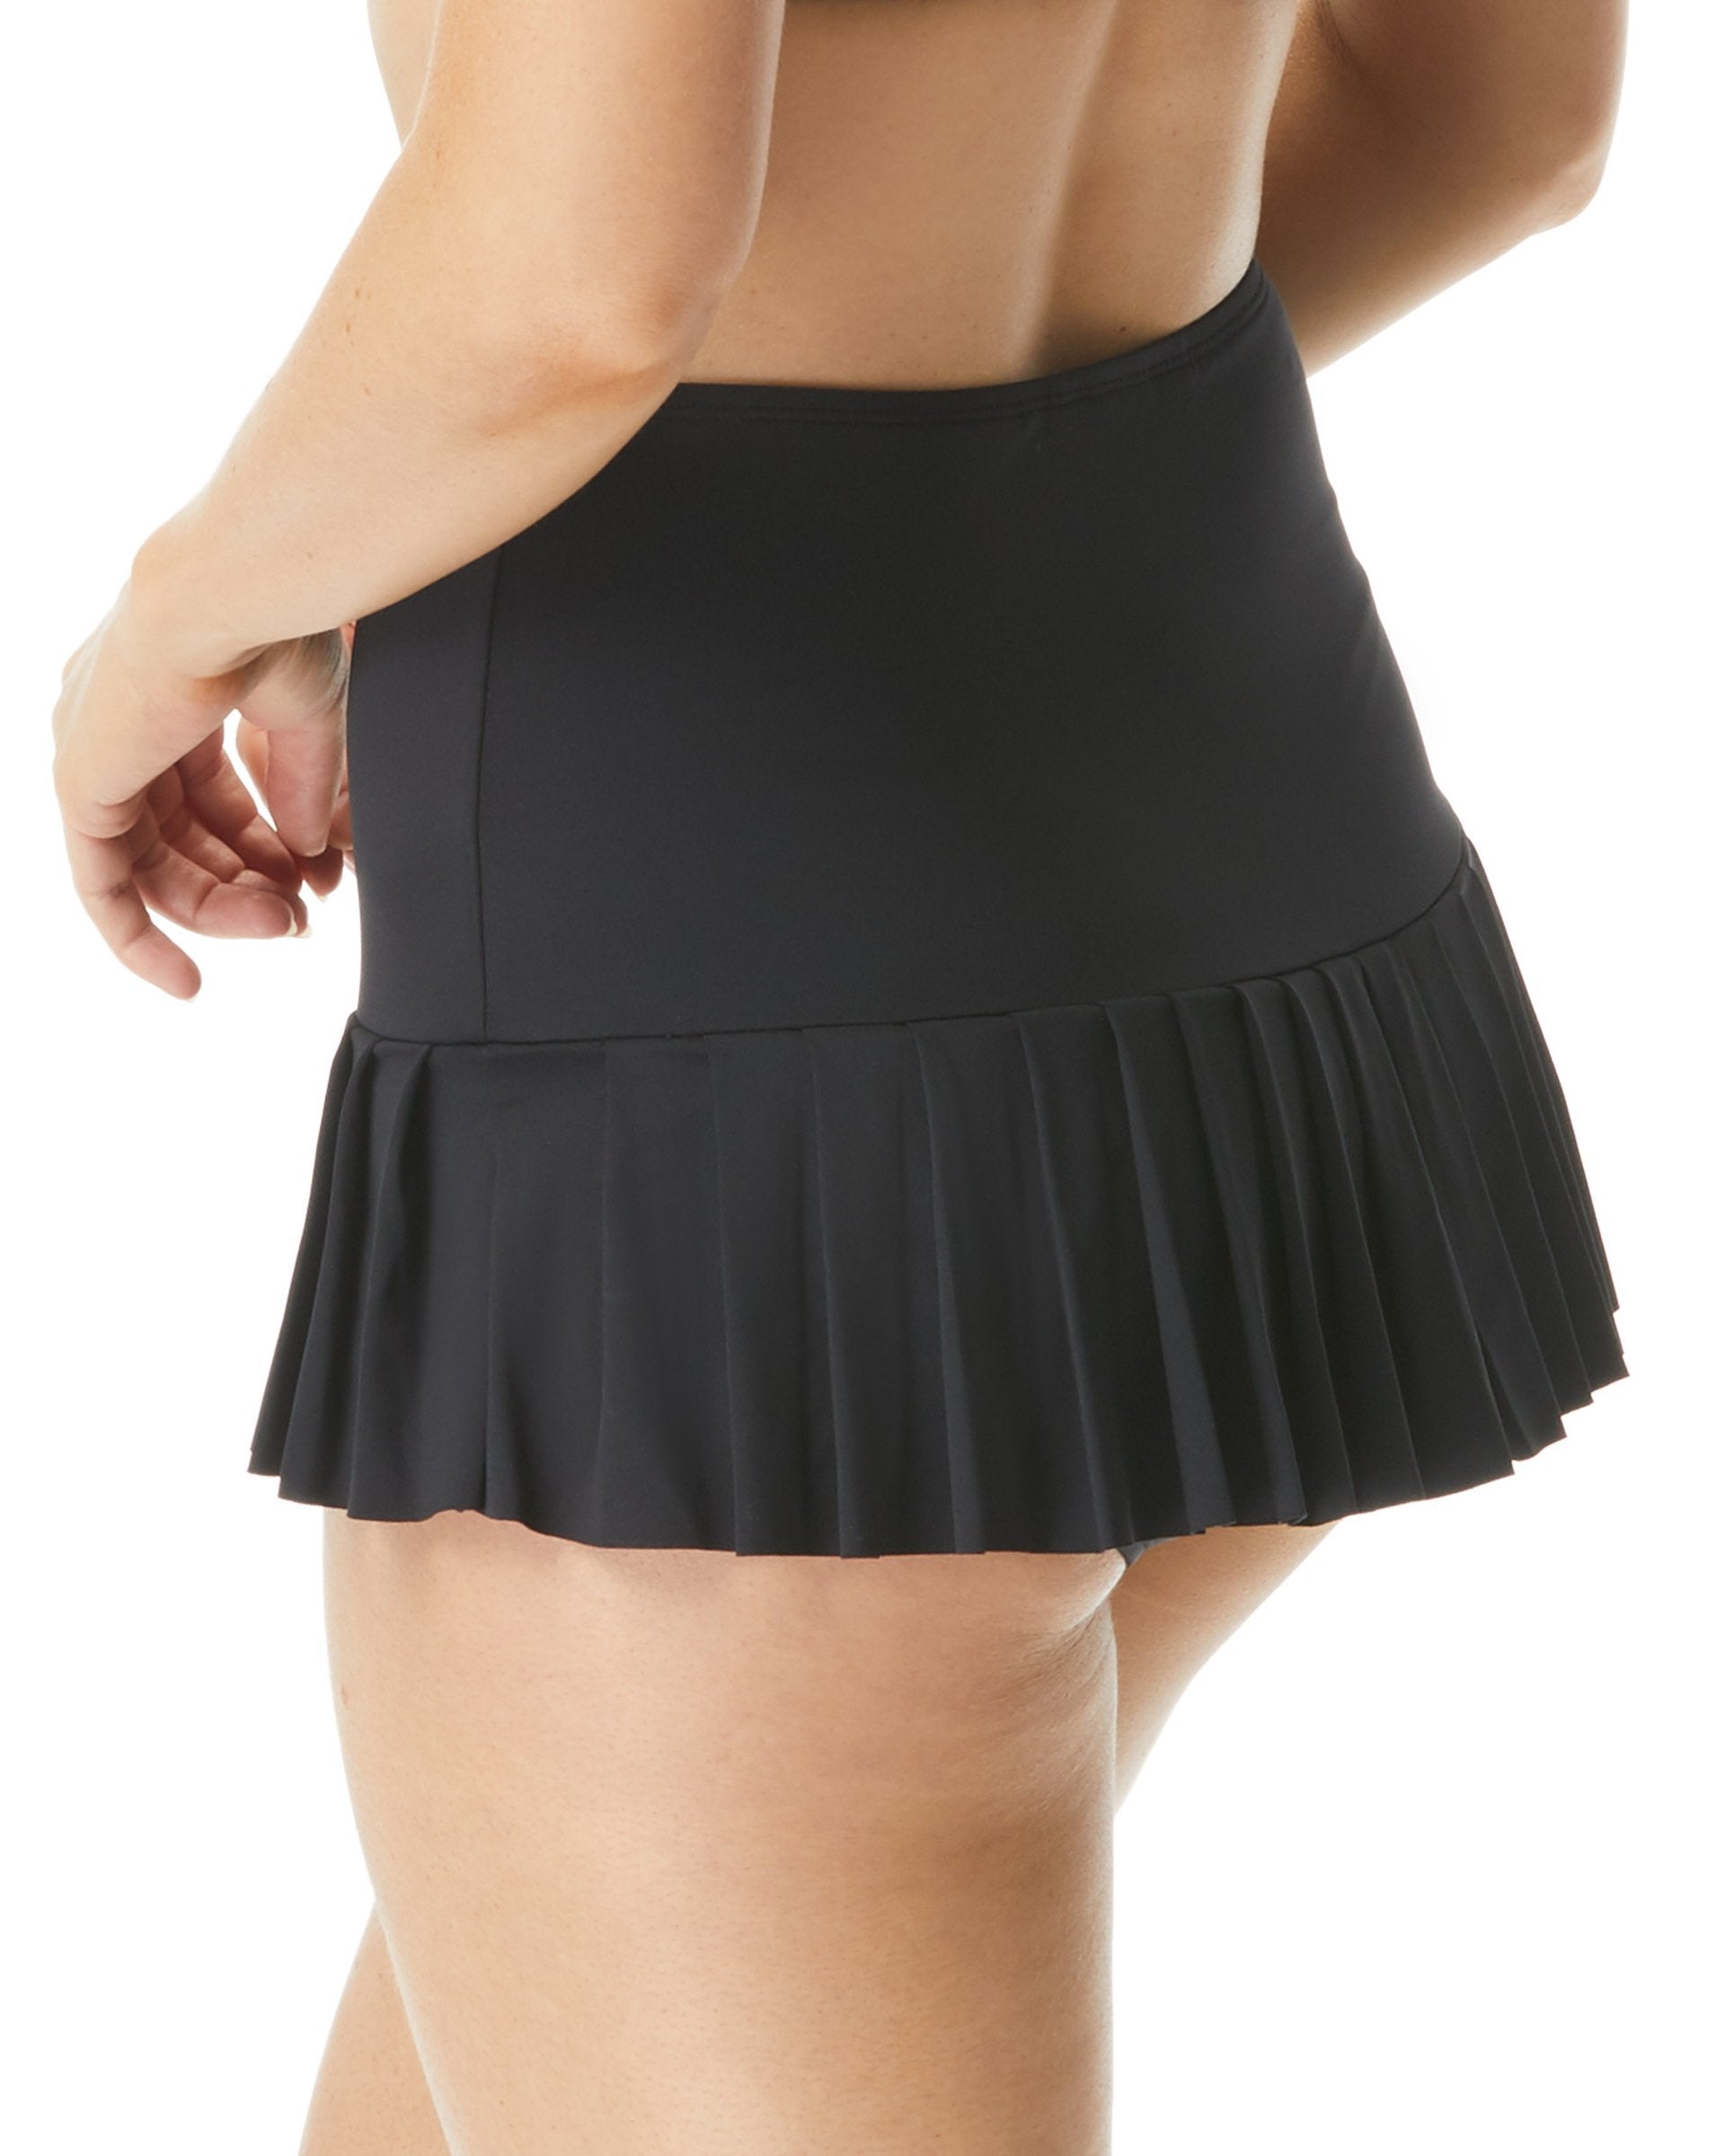 Model wearing a pleated swim skirt in black